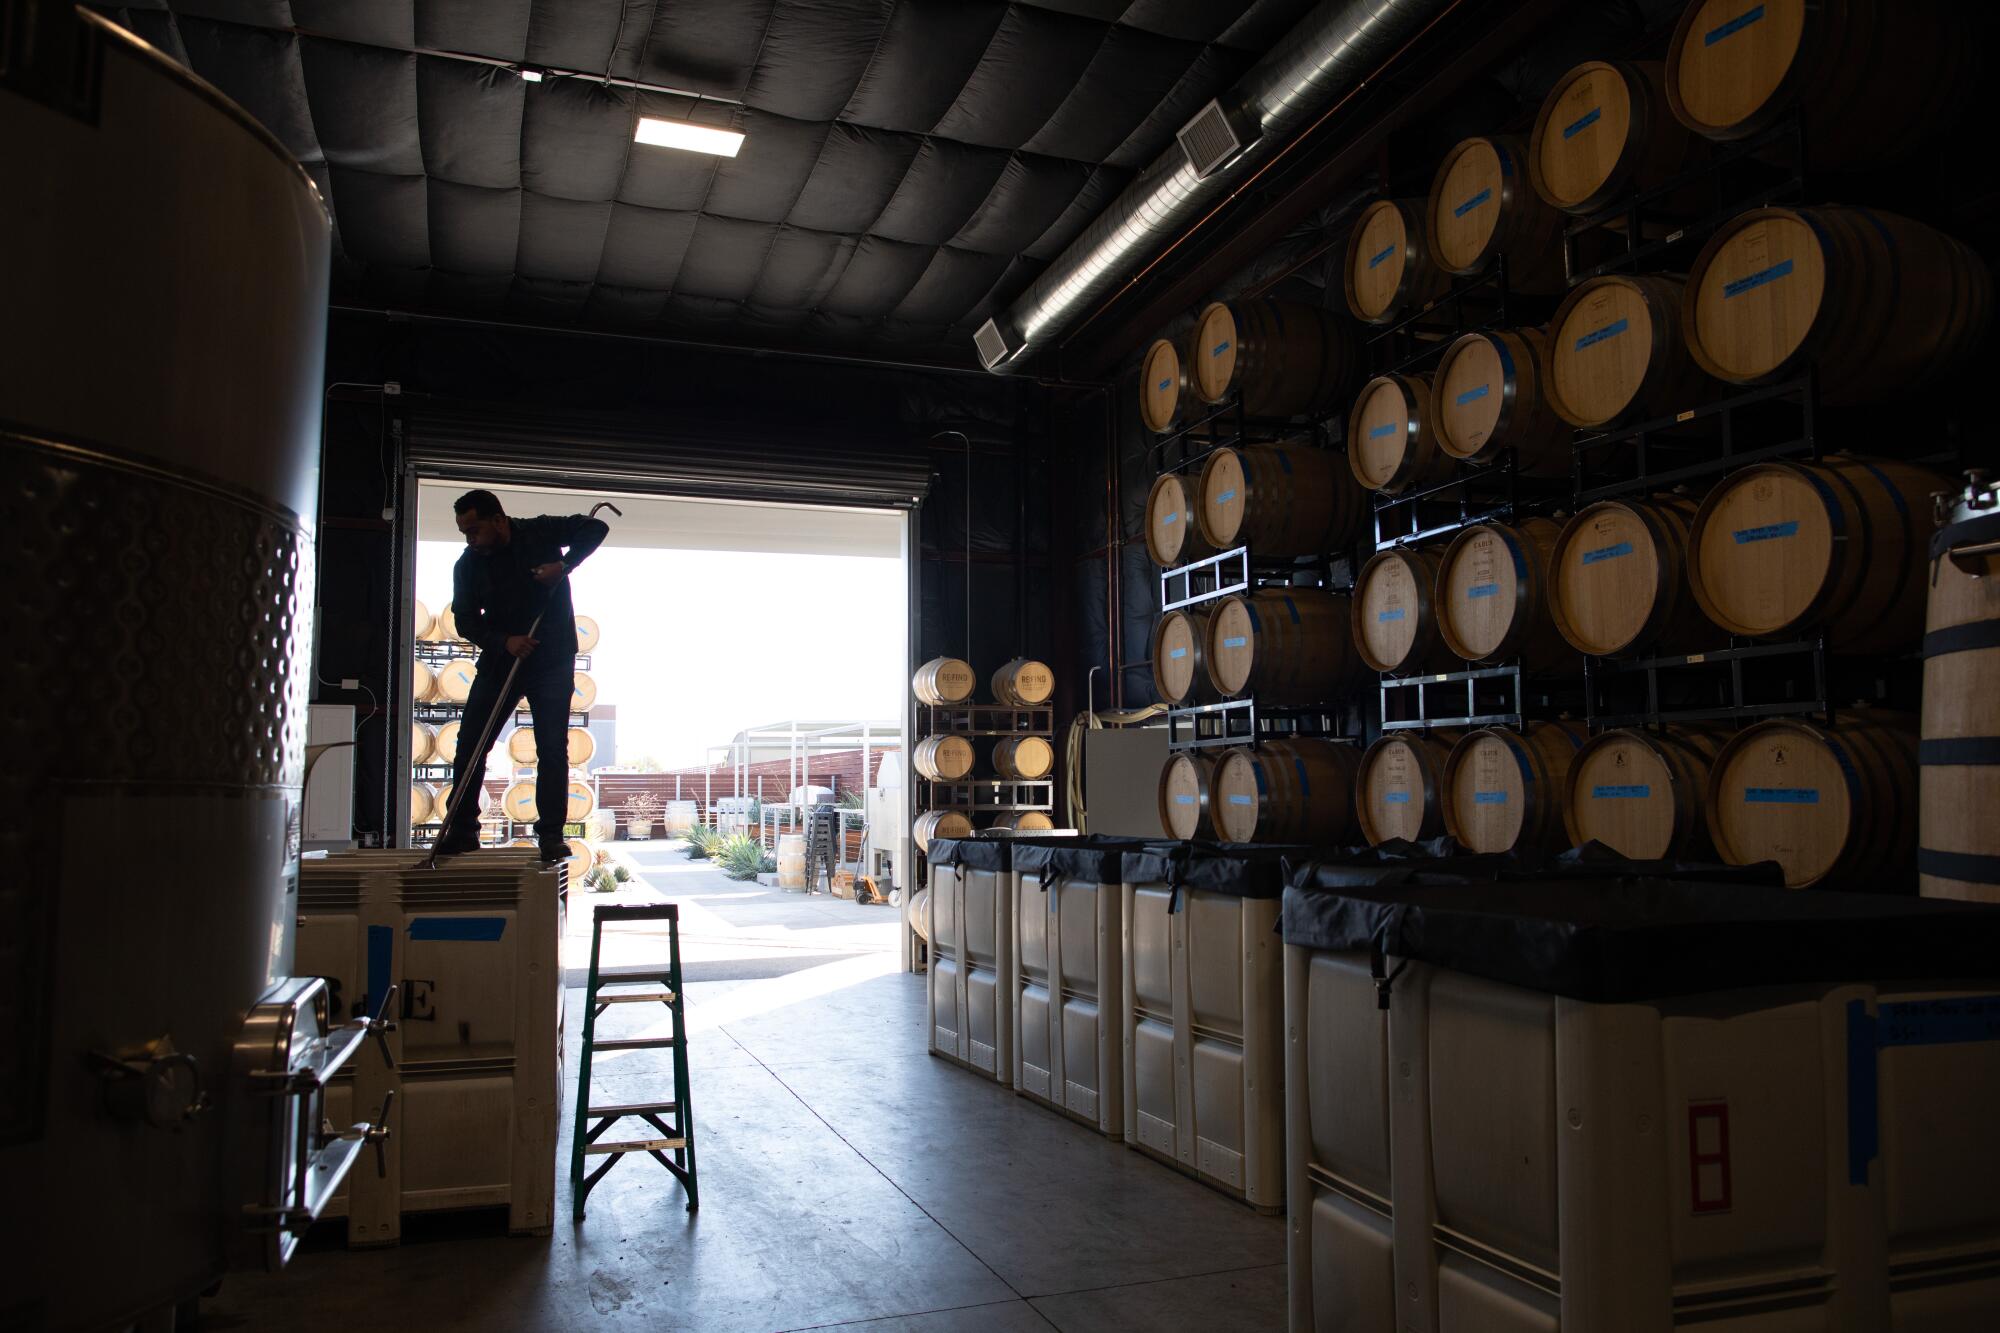 Winemaker Edgar Torres of Bodega de Edgar began his career 17 years ago with four barrels.